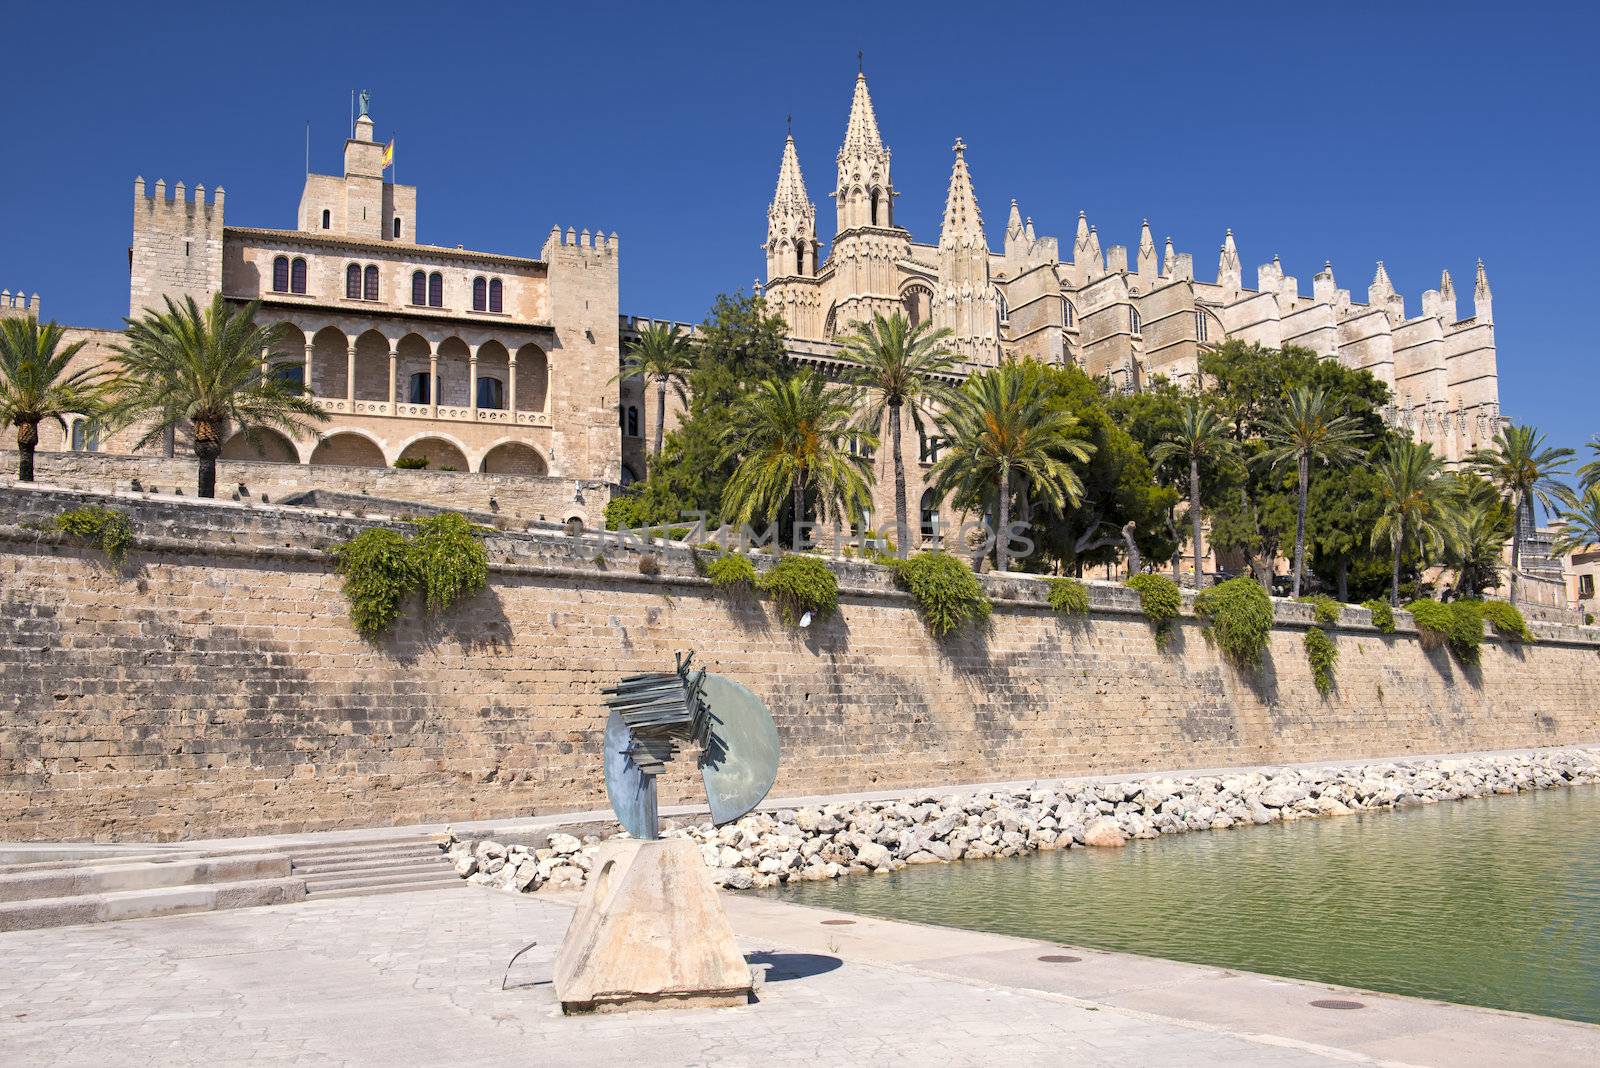 Cathedral of Palma de Majorca by Rainman